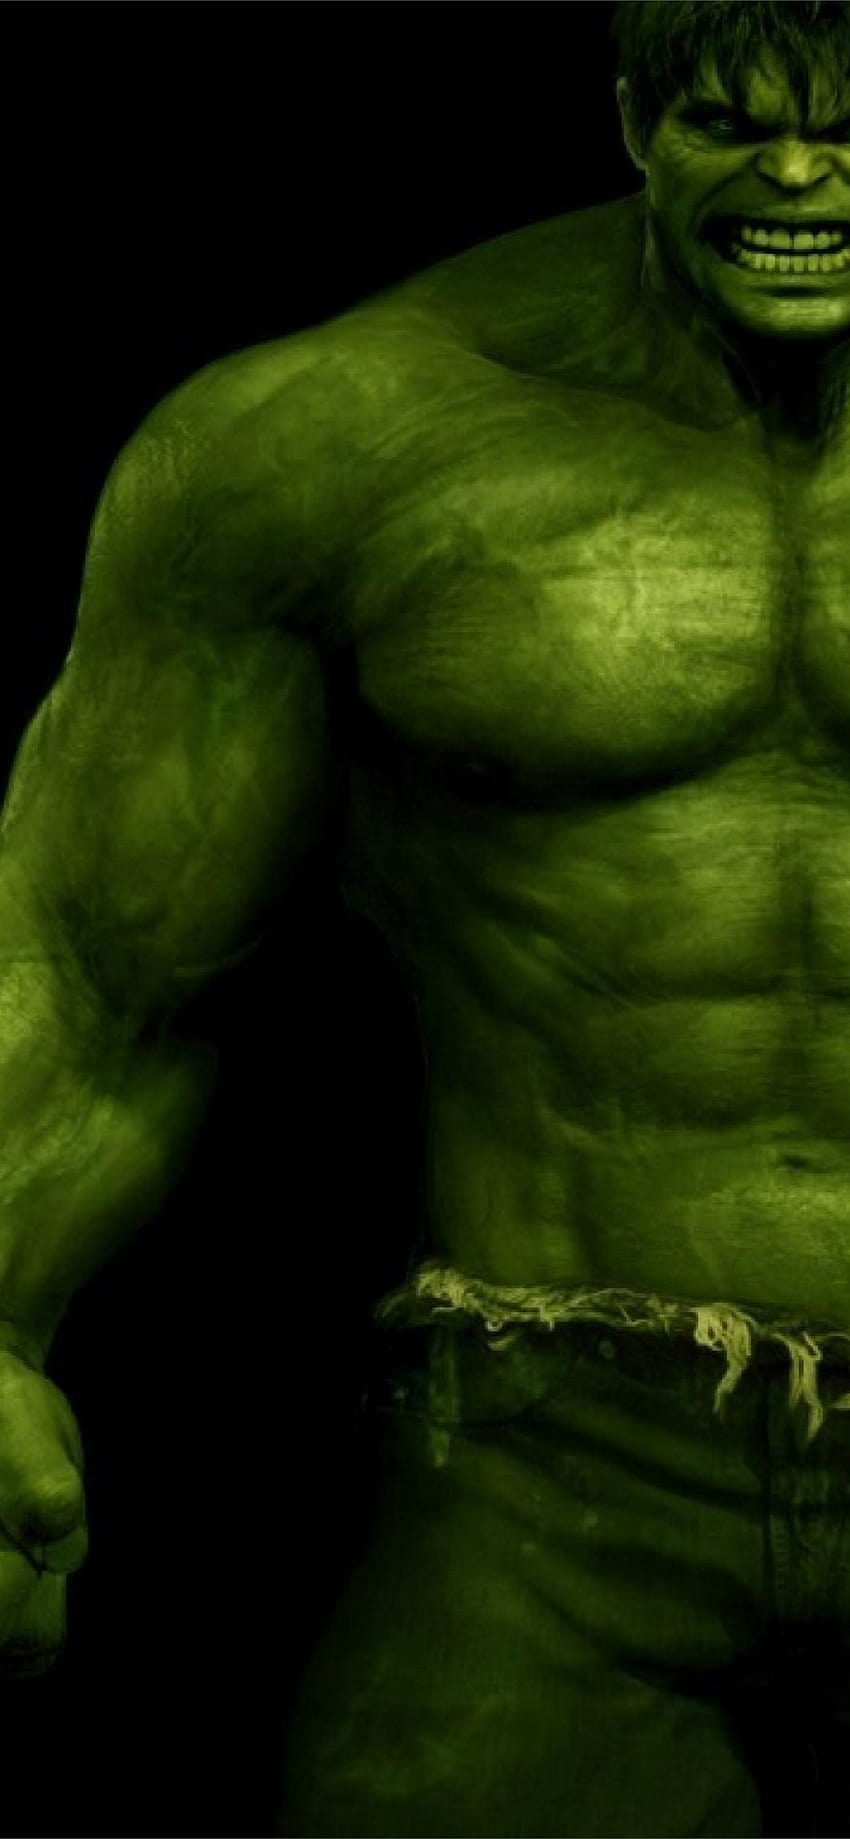 Best Incredible hulk iPhone, the incredible hulk poster HD phone ...